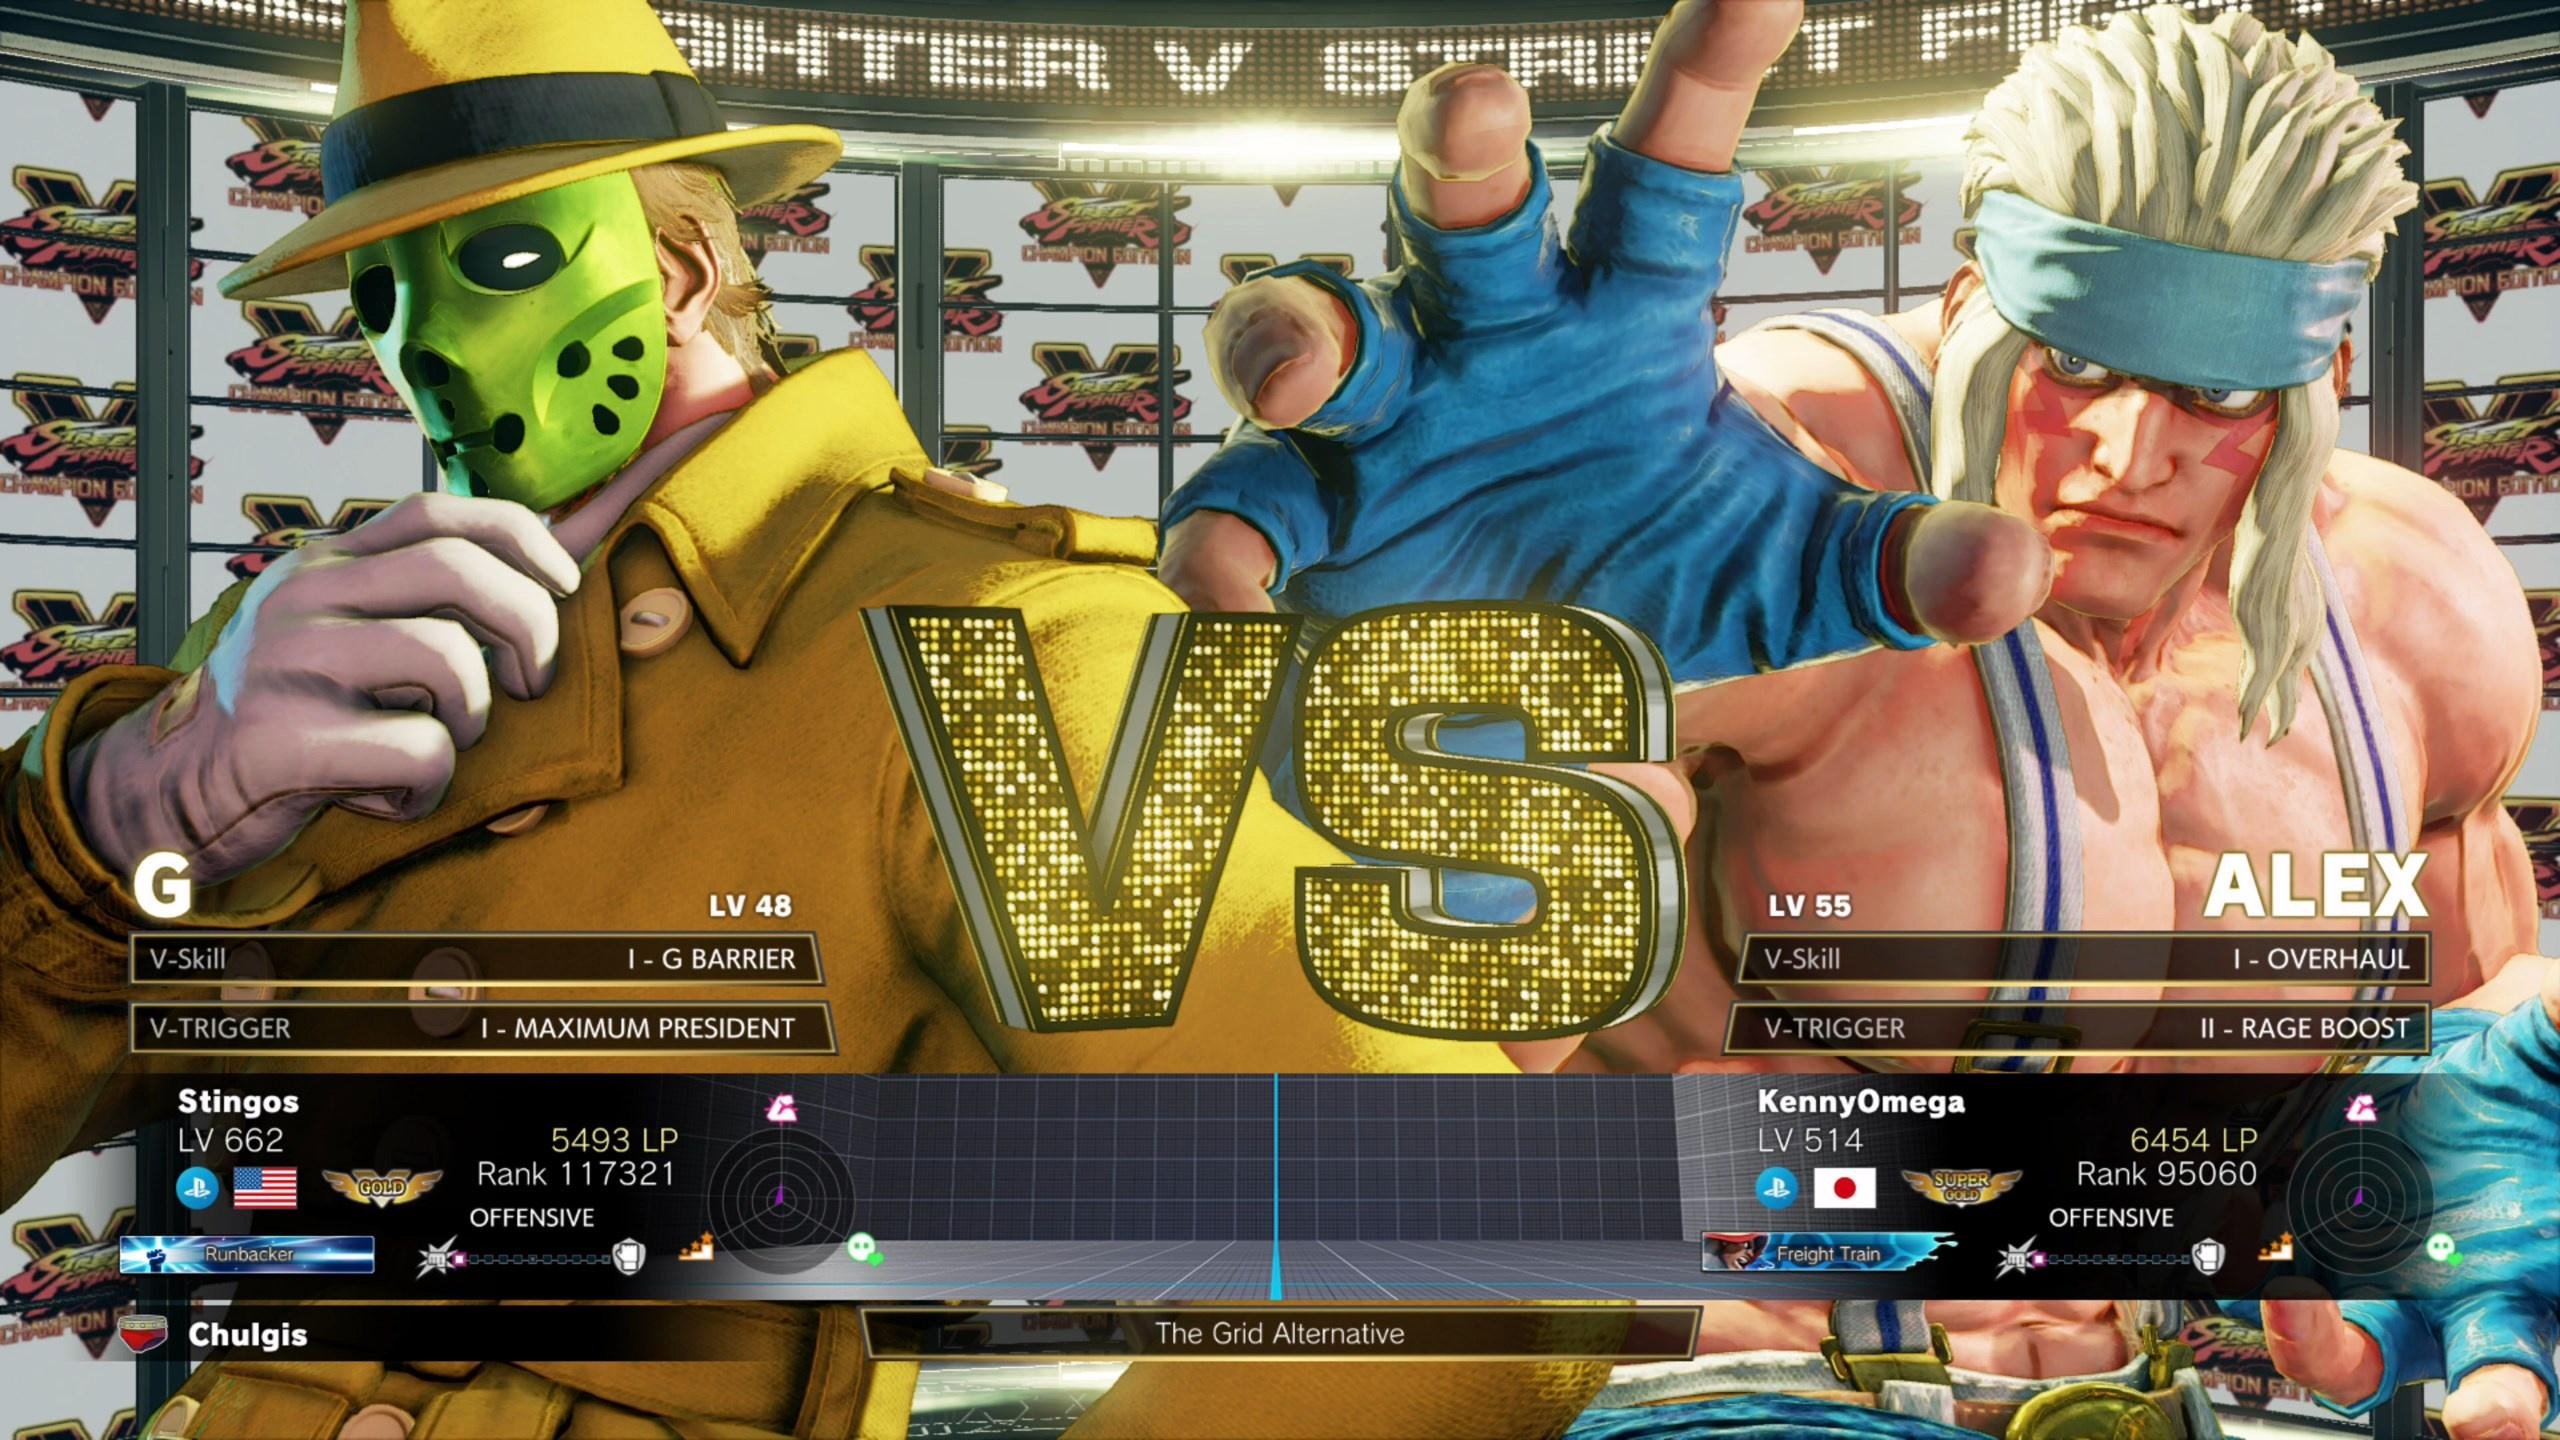 Un match de Street Fighter V contre Kenny Omega jouant le rôle d'Alex.